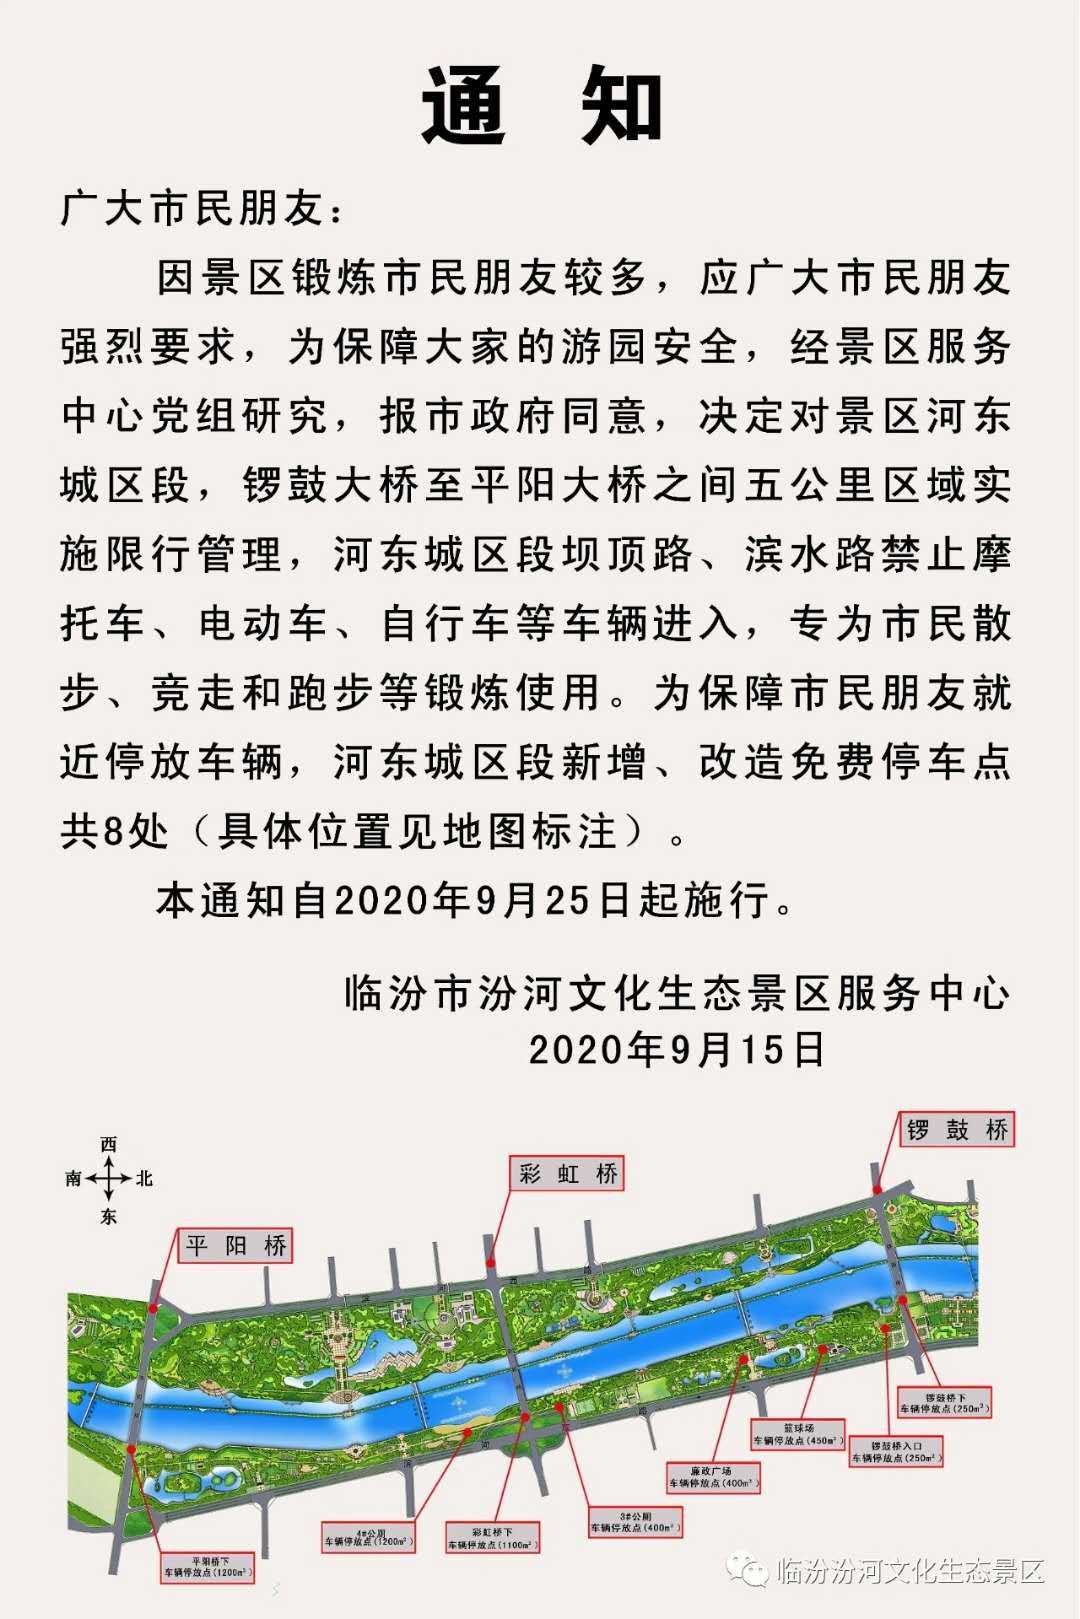 扩散┃9月25日起,临汾这个公园禁止摩托,电动,自行车等车辆进入